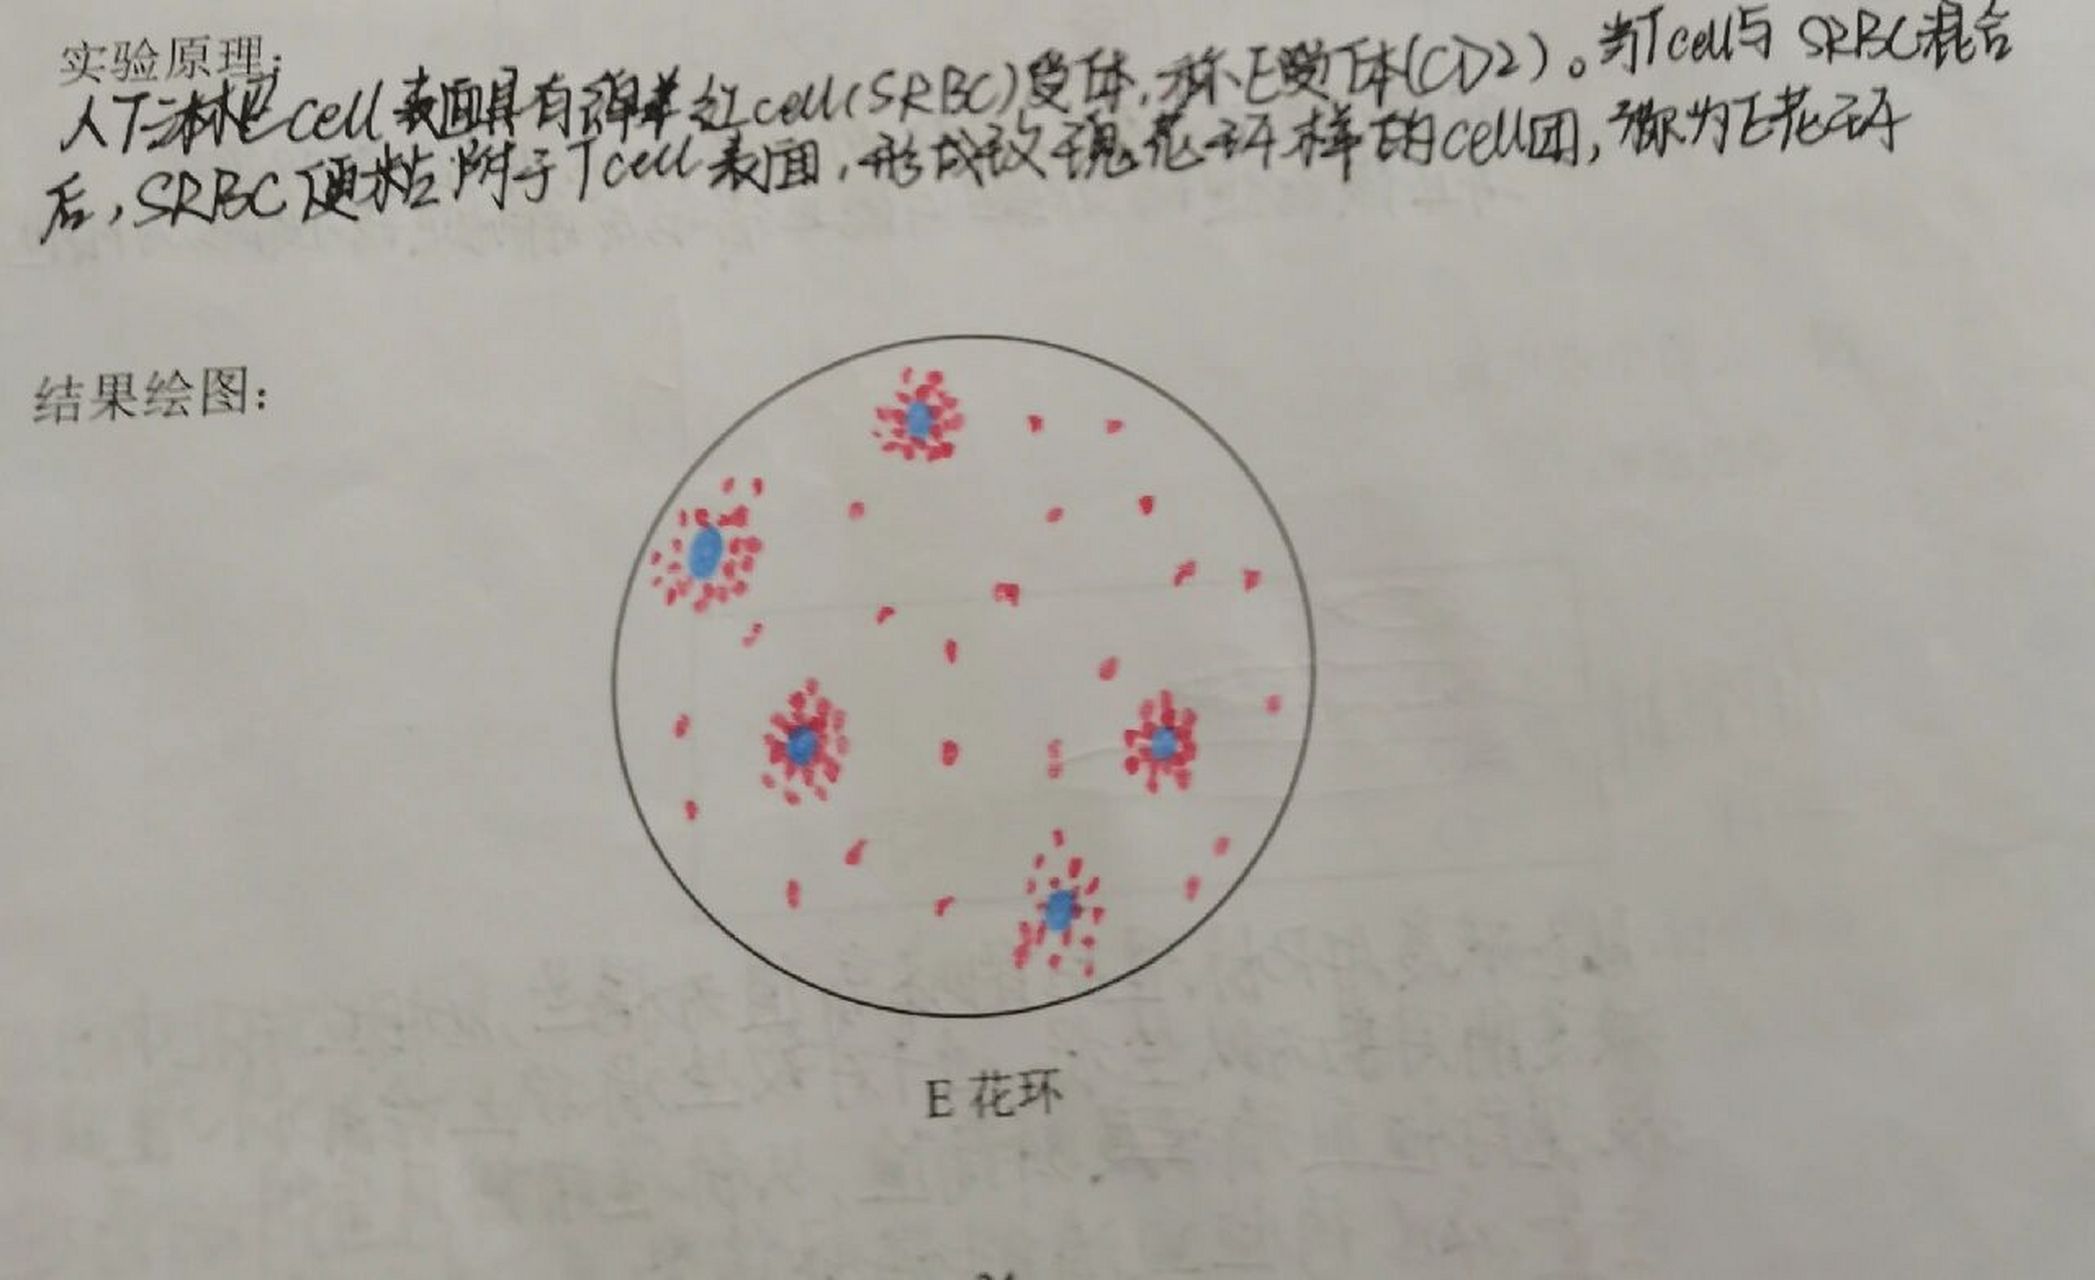 大吞噬实验红蓝铅笔图图片